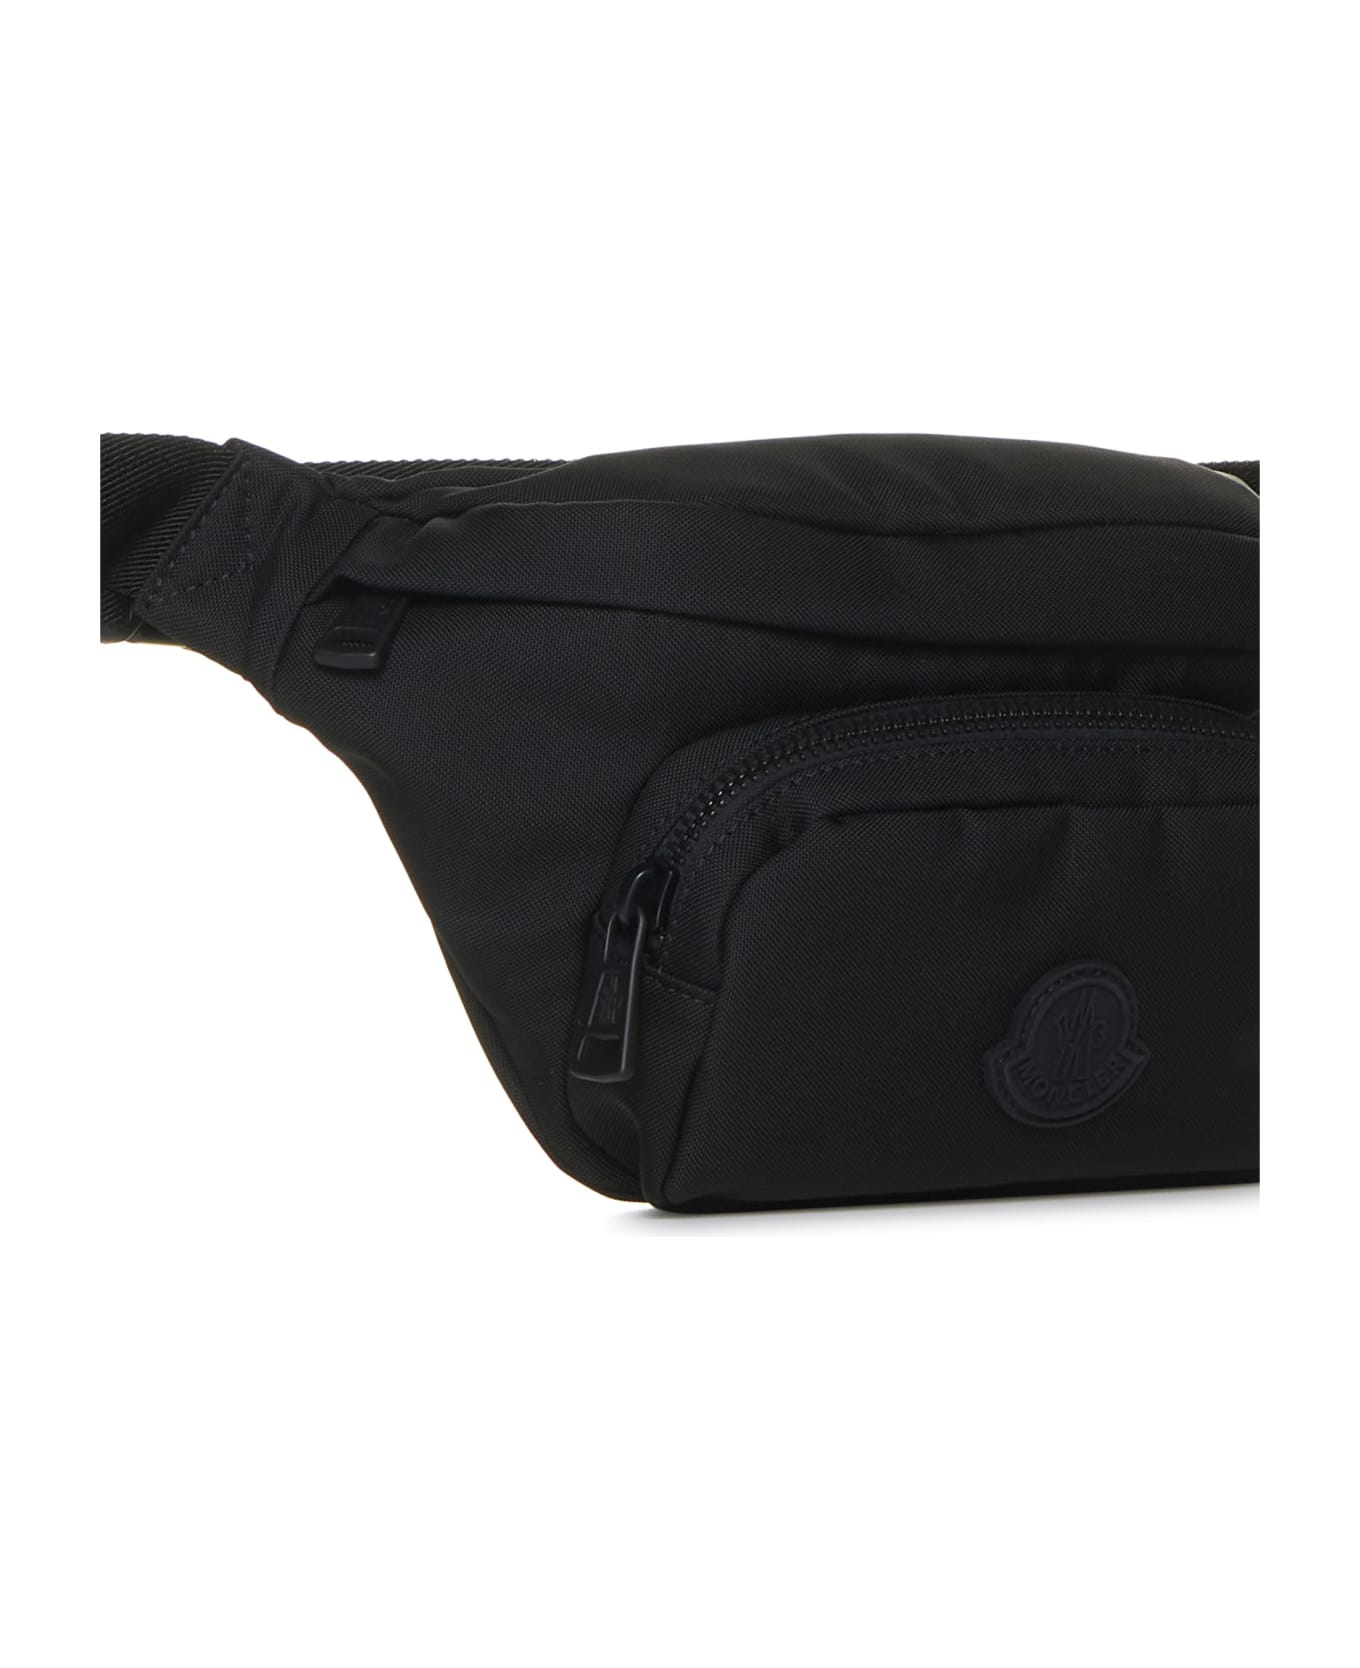 Moncler Belt Bag - Nero ベルトバッグ